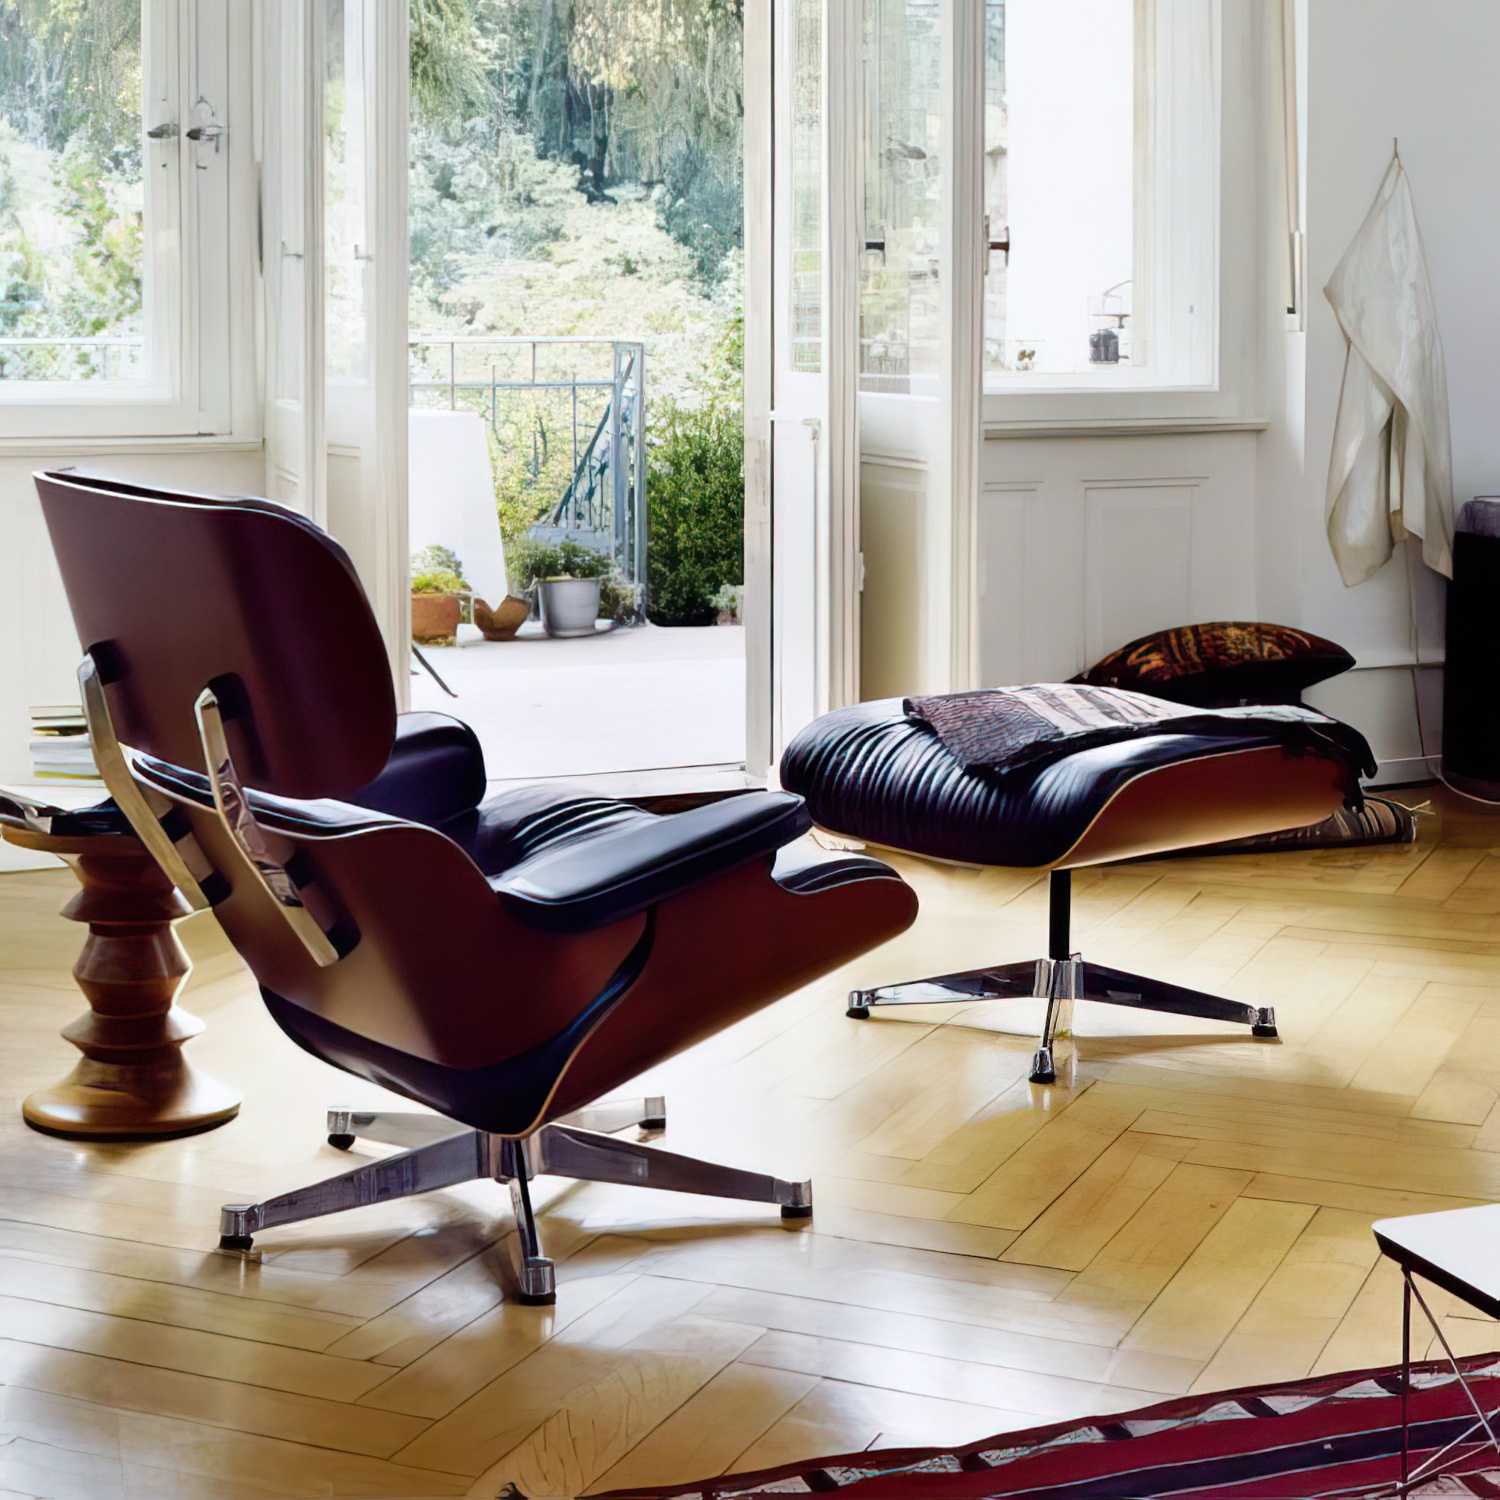 Lounge Chair und Ottoman 41213300 Amerikanischer Kirschbaum Leder in Khaki